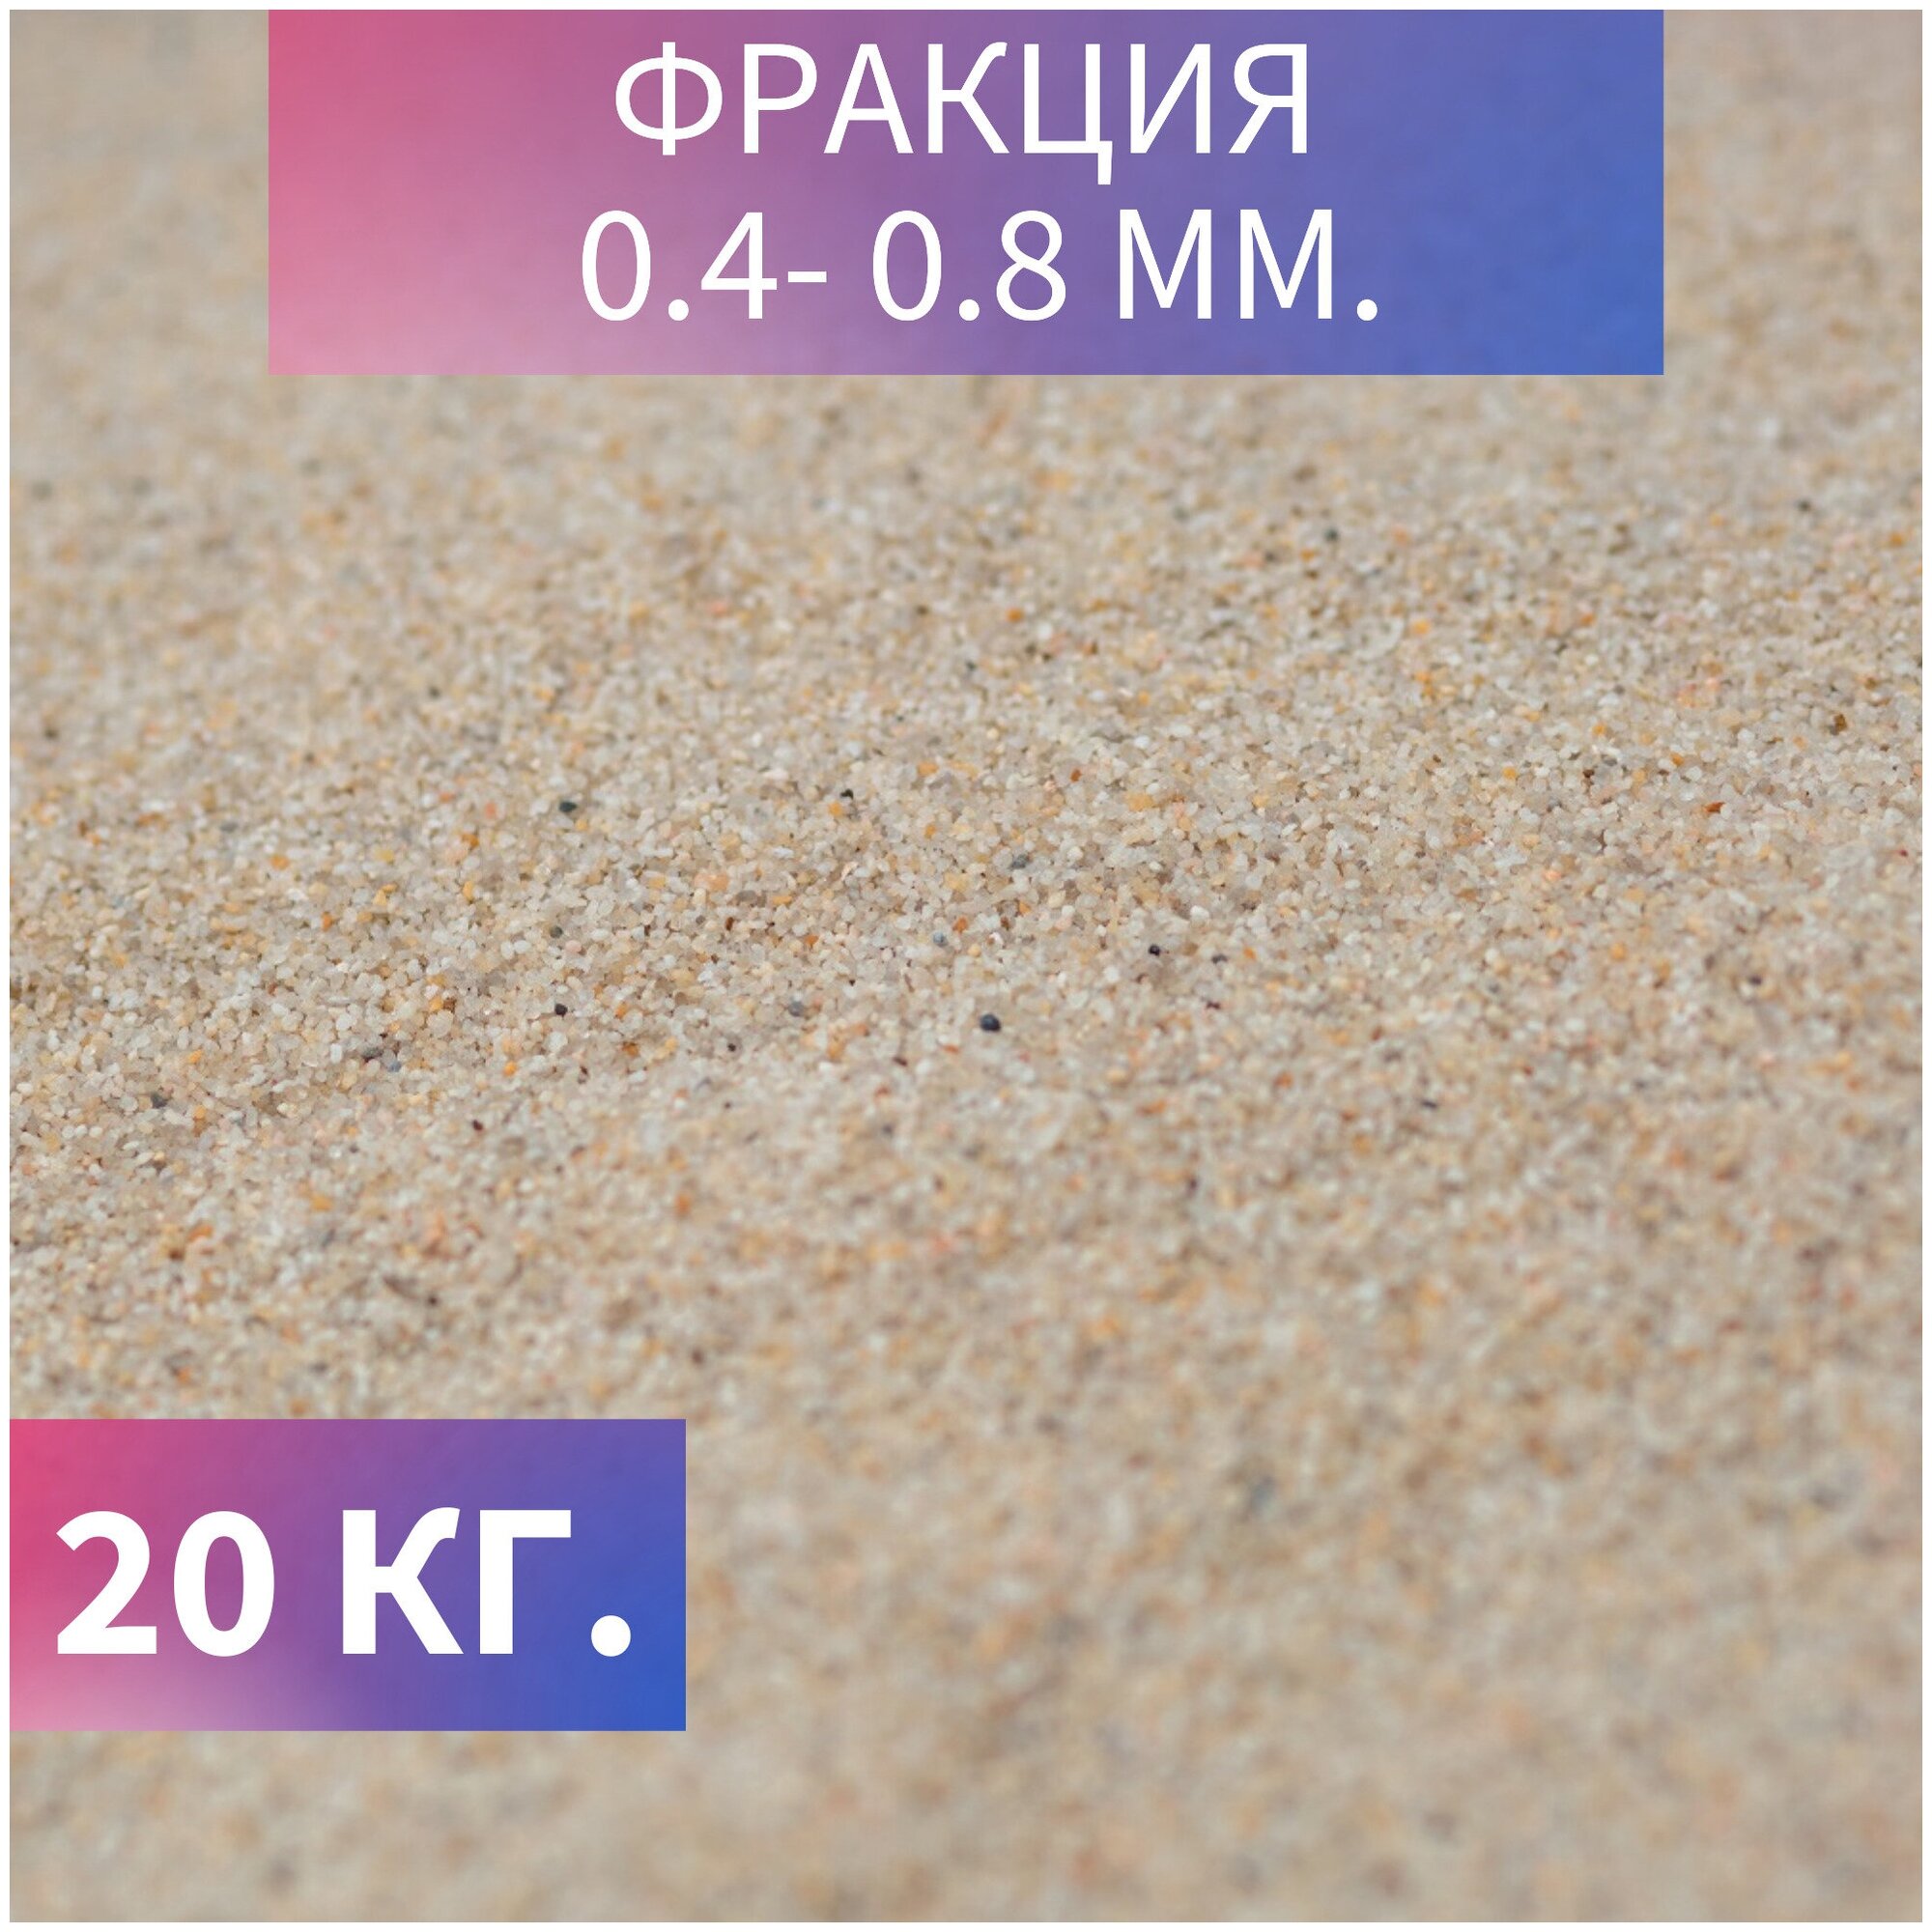 Кварцевый песок натуральный универсальный для фильтрации воды для песочницы и детского творчества фракция 04-08 мм 20 кг.